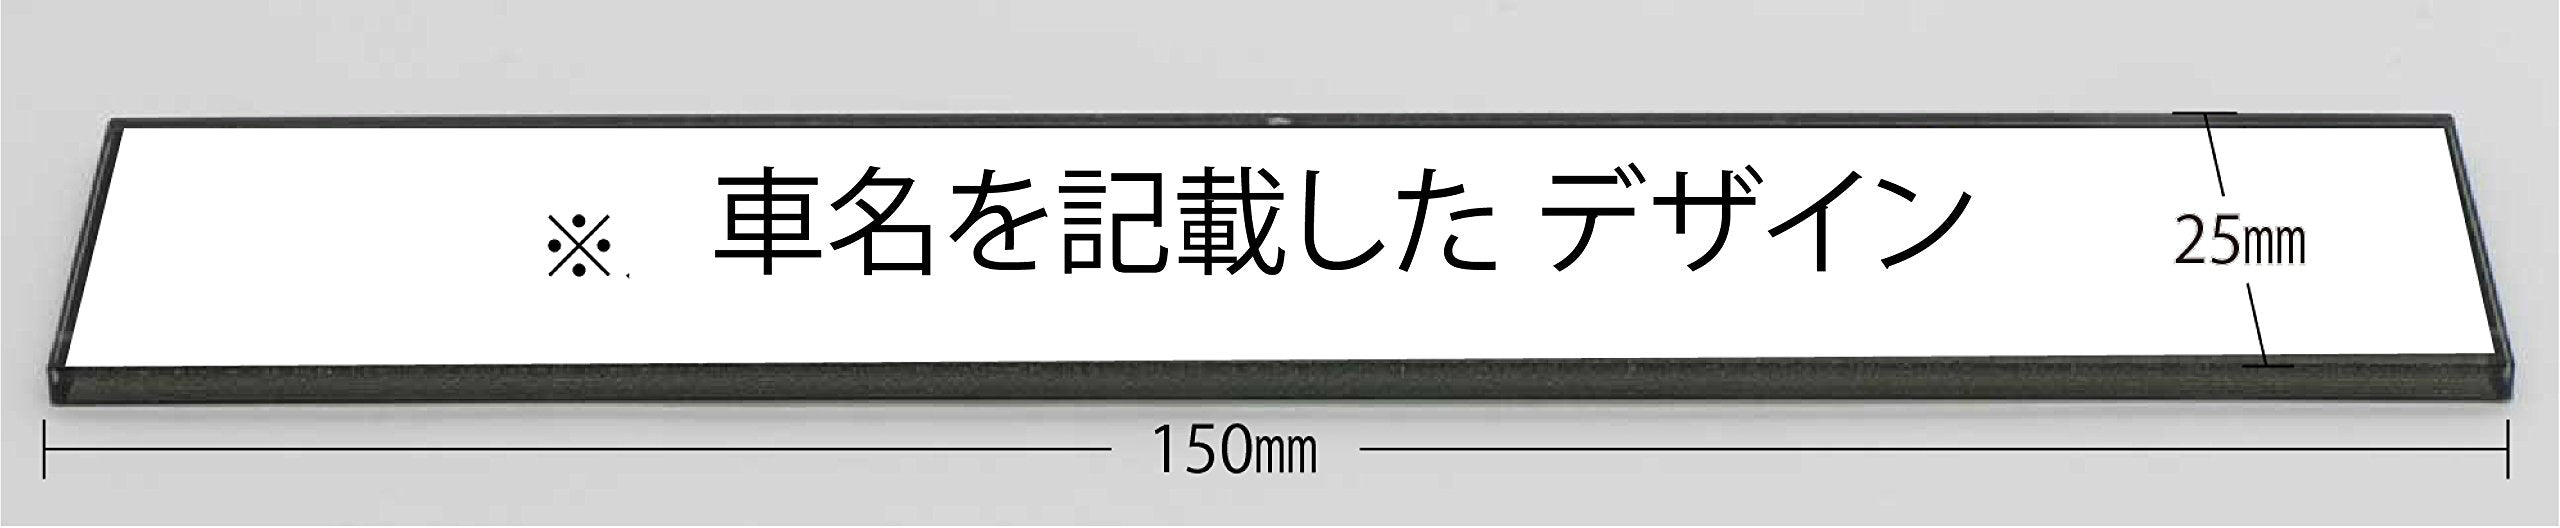 Fujimi Id-259 Kpgc 10 Skyline Gt-R 2 portes 71 avec plaque signalétique de voiture à l'échelle 1/24